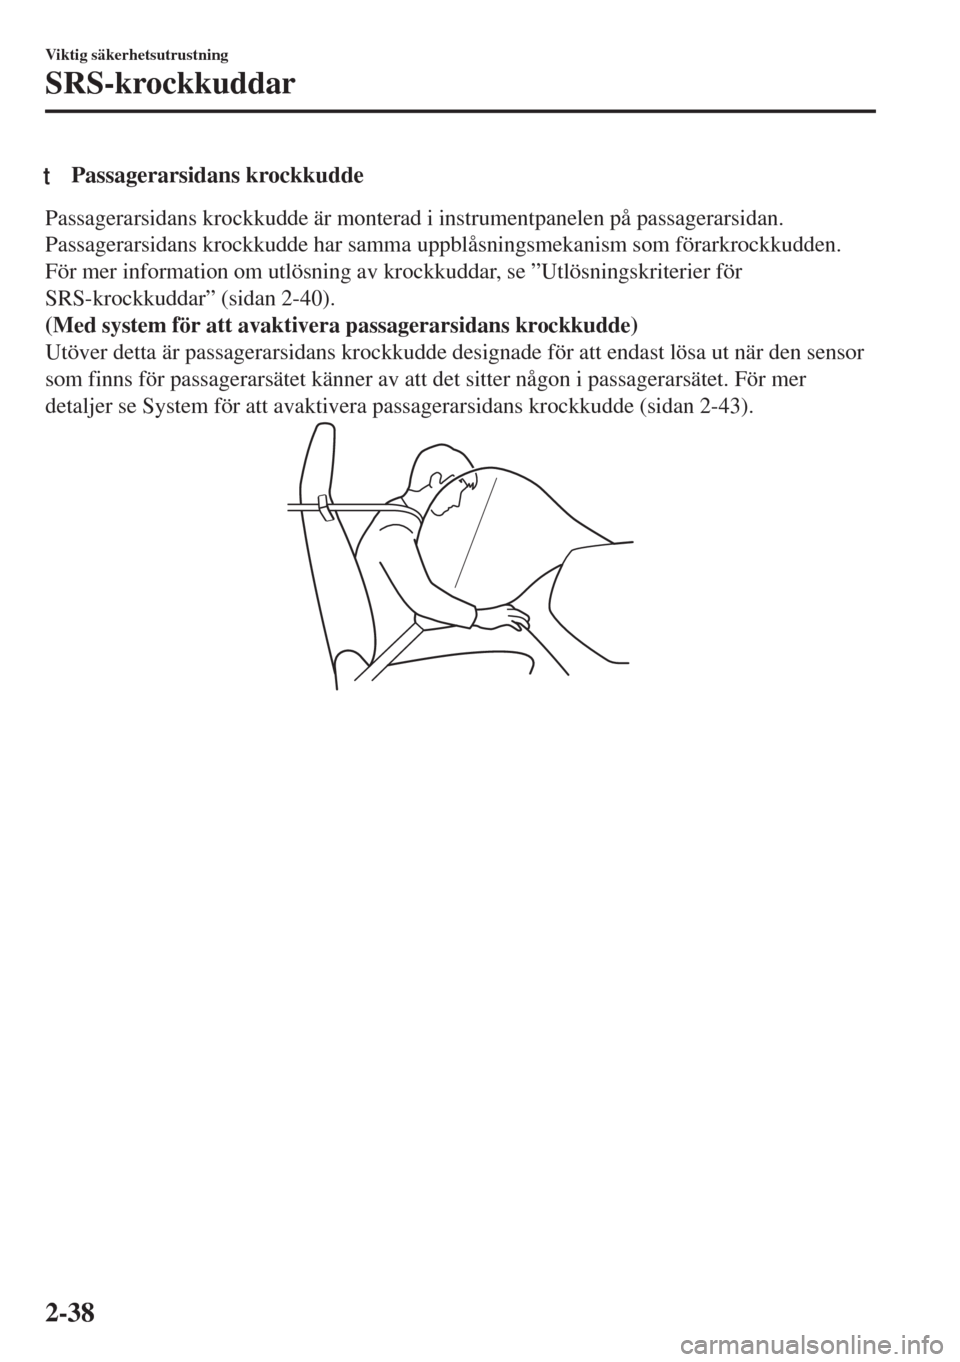 MAZDA MODEL MX-5 2017  Ägarmanual (in Swedish) tPassagerarsidans krockkudde
Passagerarsidans krockkudde är monterad i instrumentpanelen på passagerarsidan.
Passagerarsidans krockkudde har samma uppblåsningsmekanism som förarkrockkudden.
För m